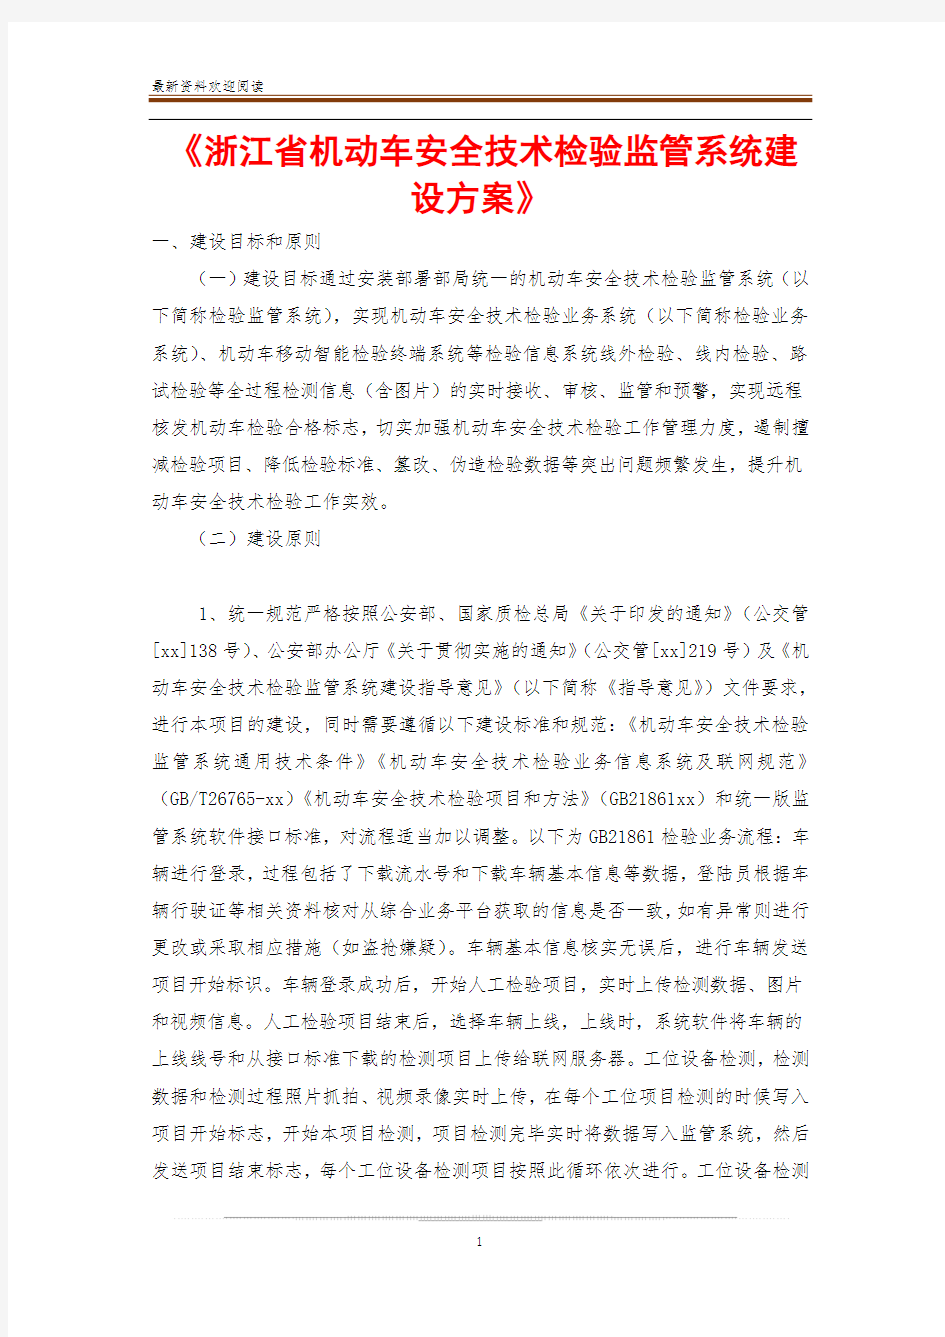 《浙江省机动车安全技术检验监管系统建设方案》